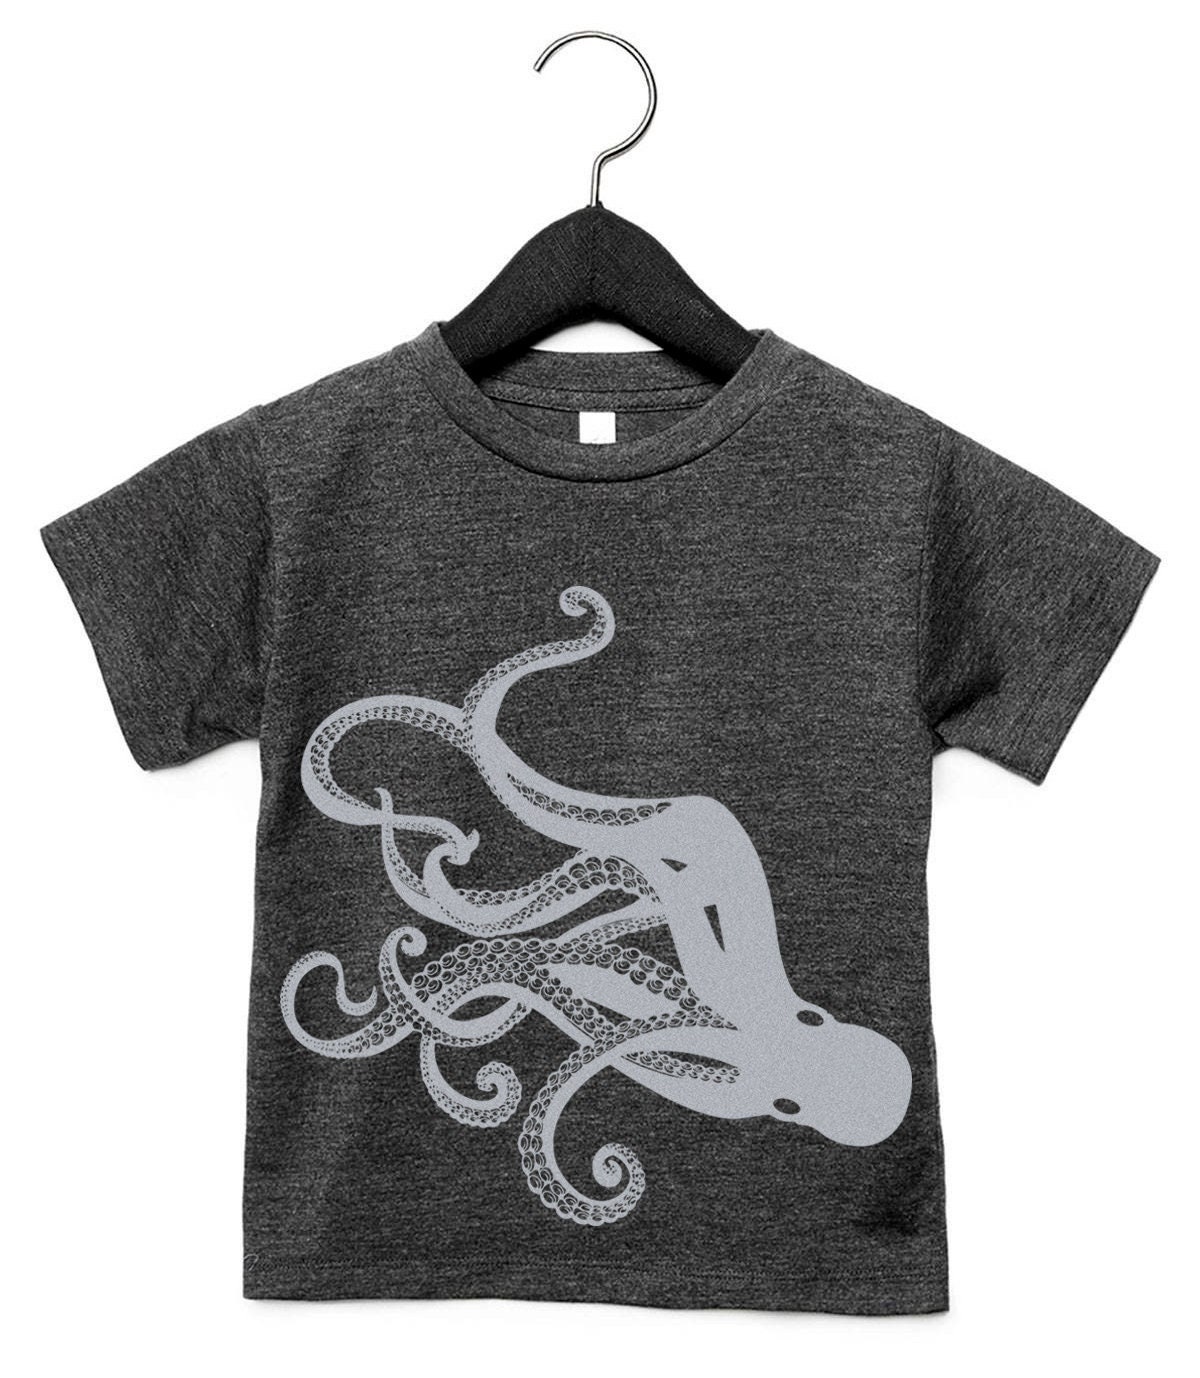 Silk Screen Stencils Clay Silk Screen Octopus Kraken 